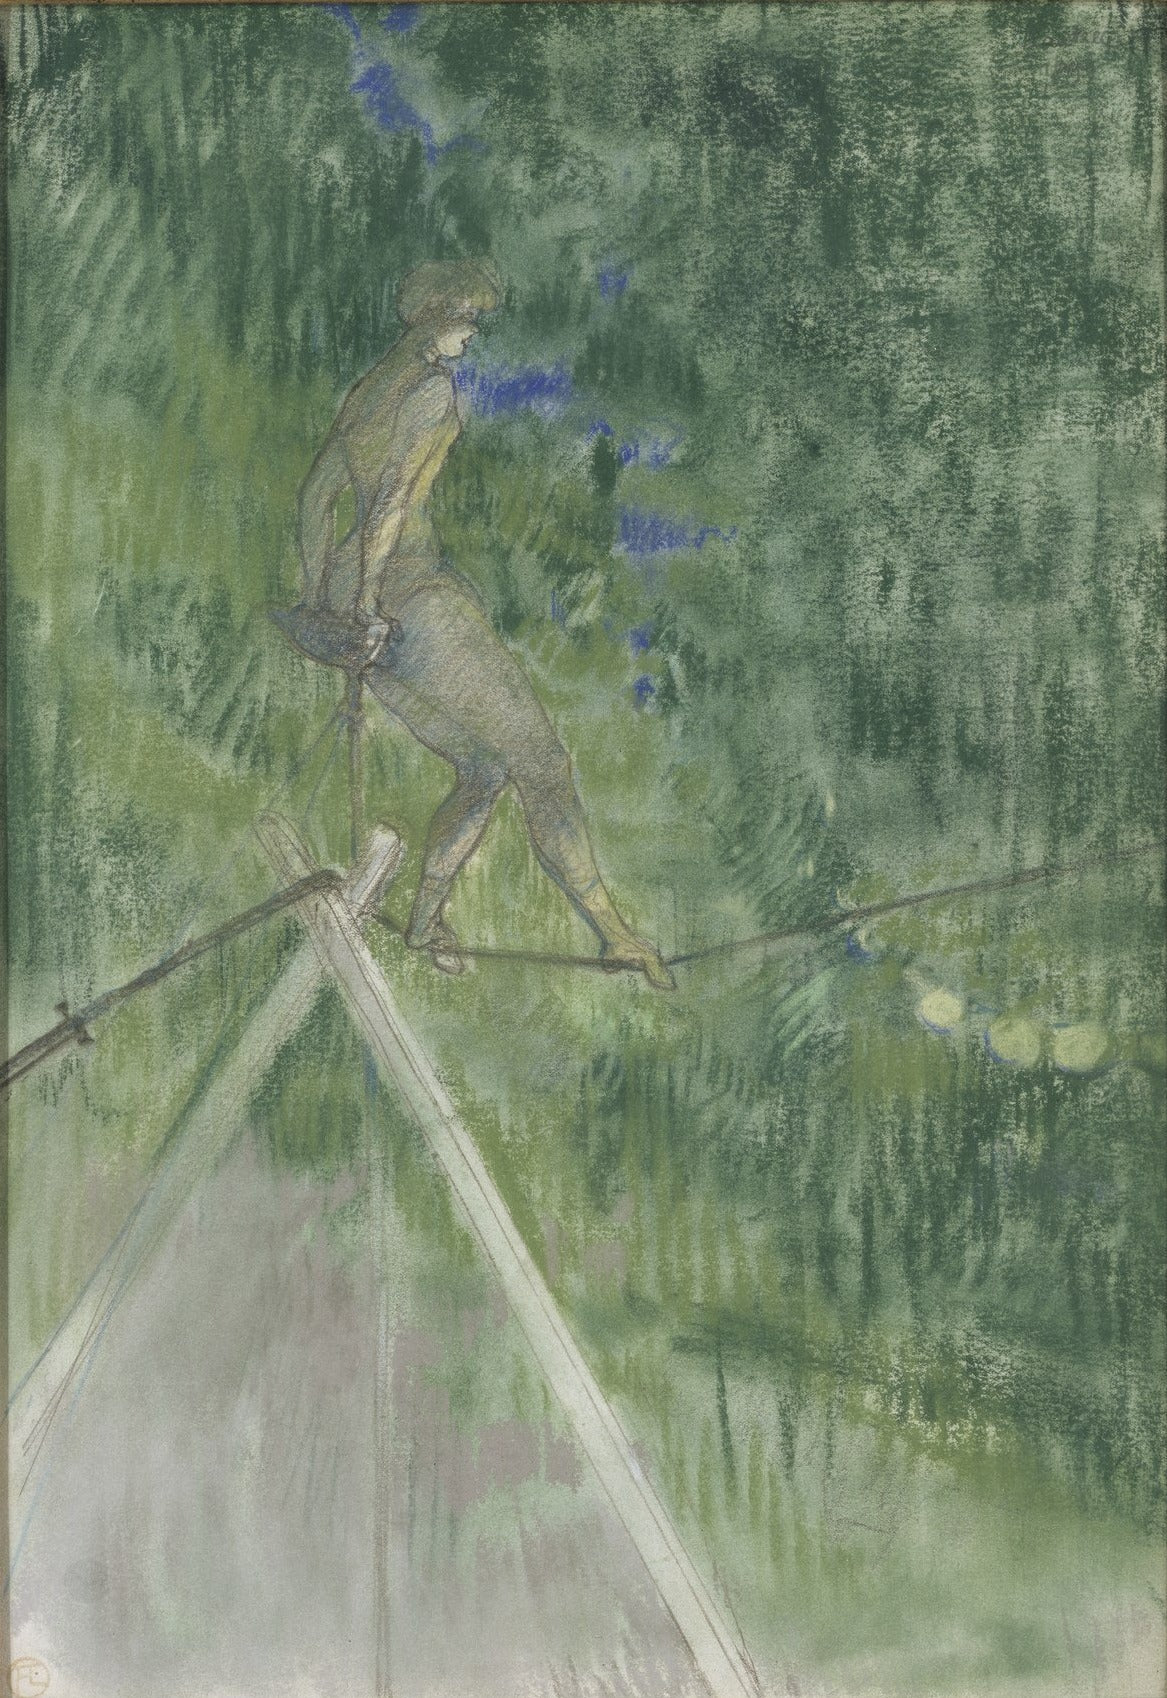 Le danseur de corde - Toulouse Lautrec